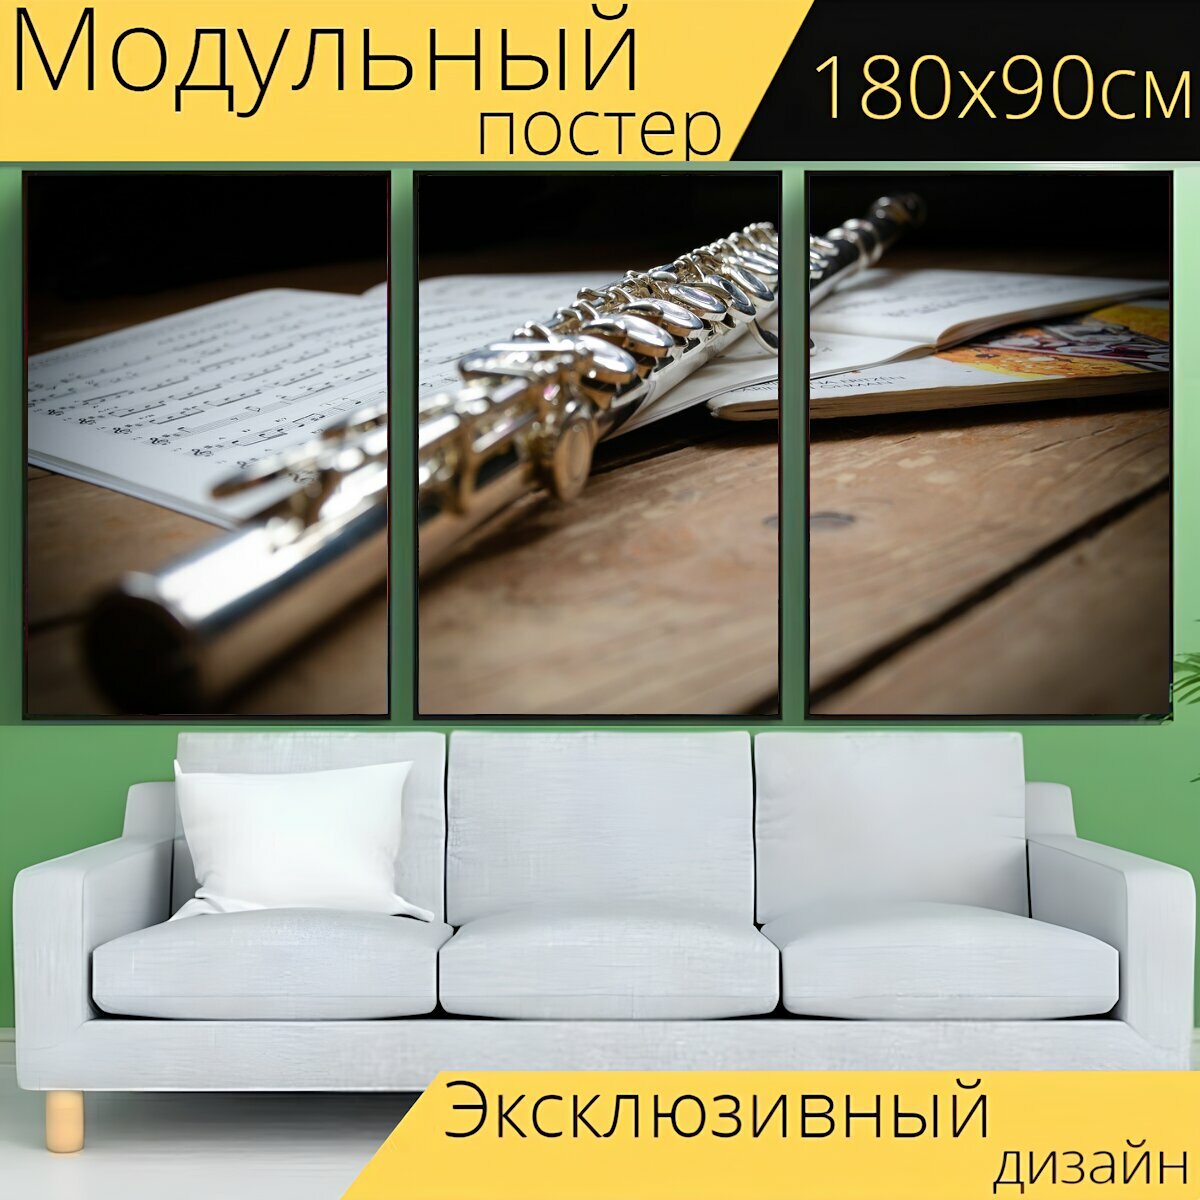 Модульный постер "Флейта, музыка, инструмент" 180 x 90 см. для интерьера